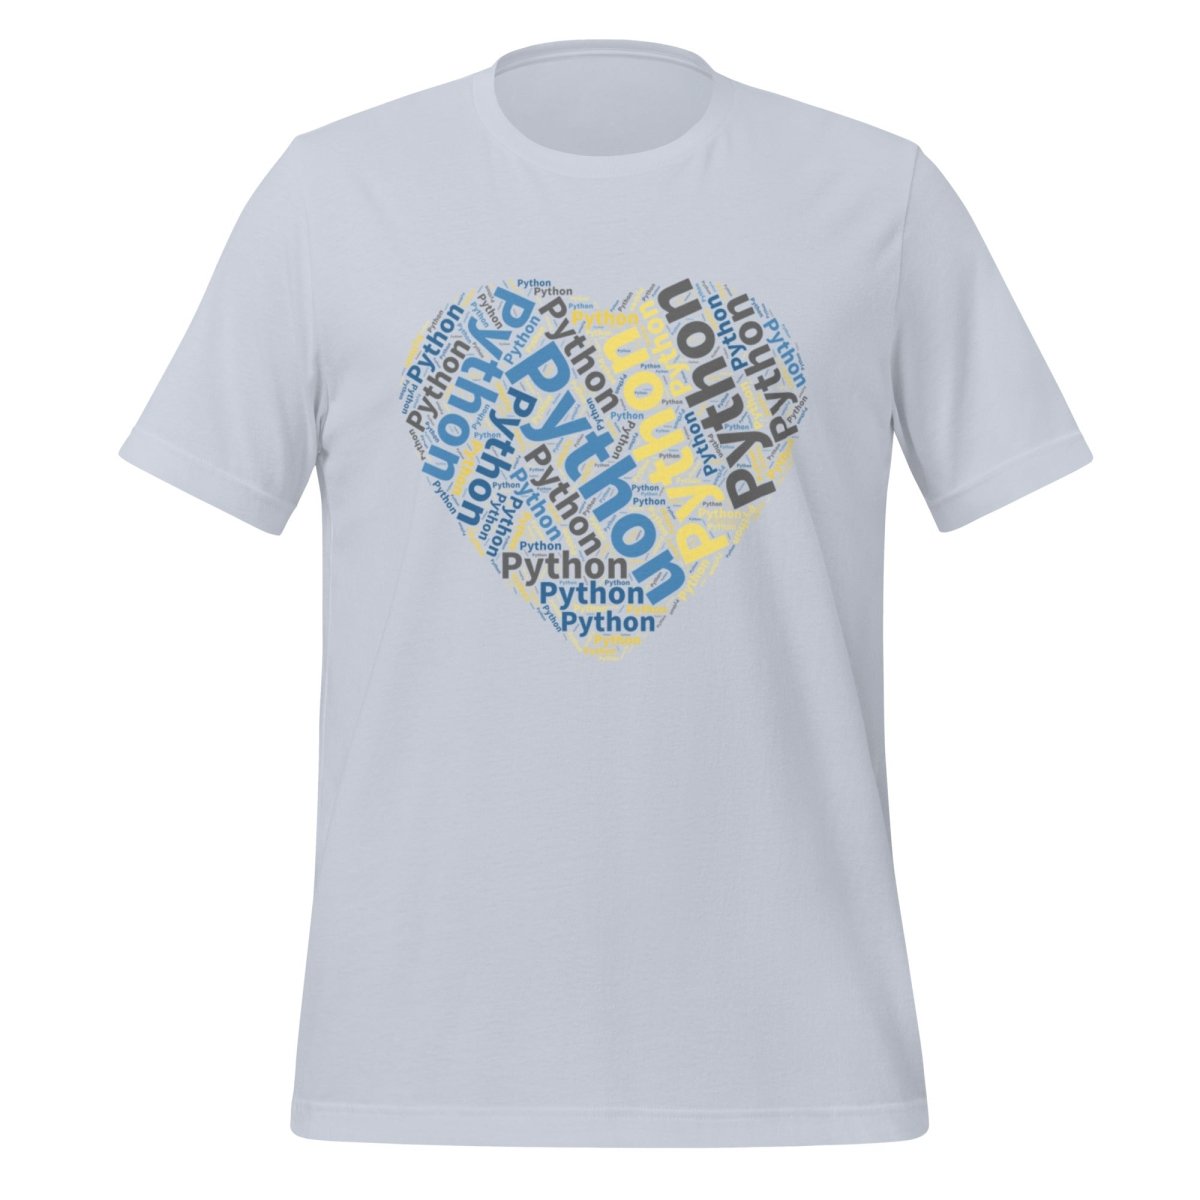 Python Heart Word Cloud T - Shirt (unisex) - Light Blue - AI Store